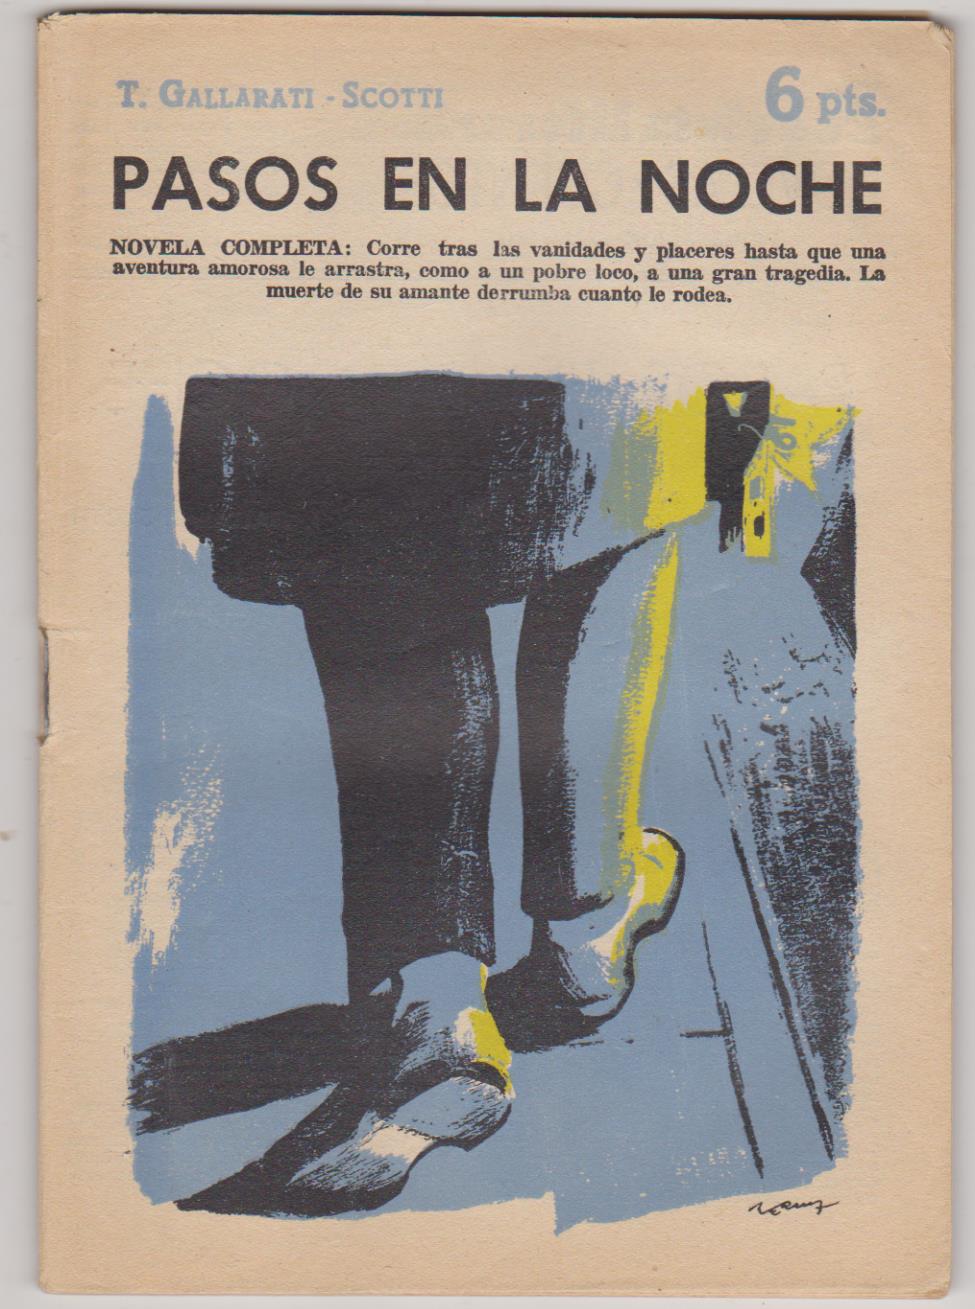 Revista Literaria nº 1499. T. Gallarati-Scotti. Pasos en la noche. Año 1960